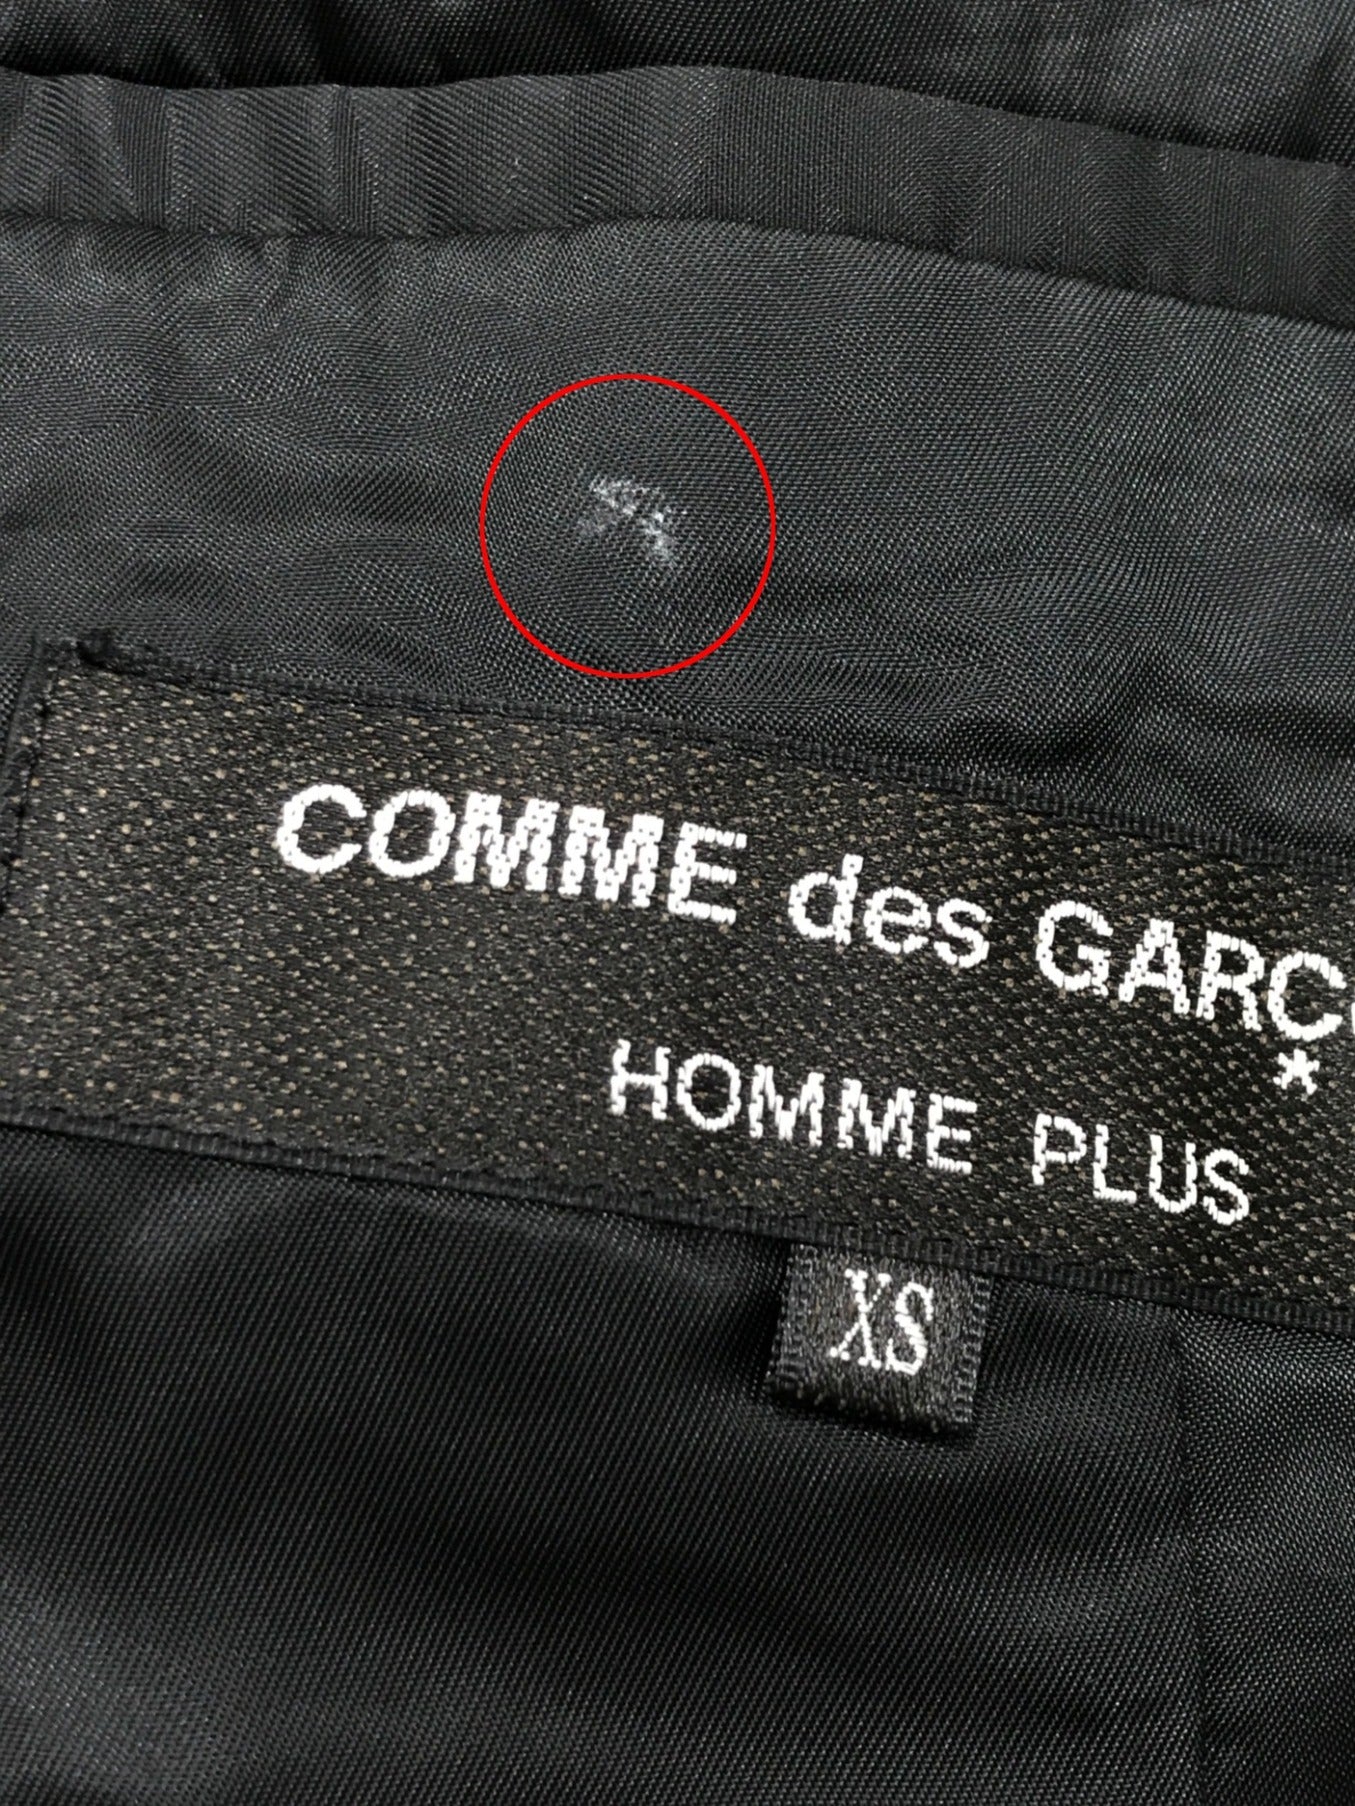 Comme des Garcons Homme Plus尾衣| Archive Factory